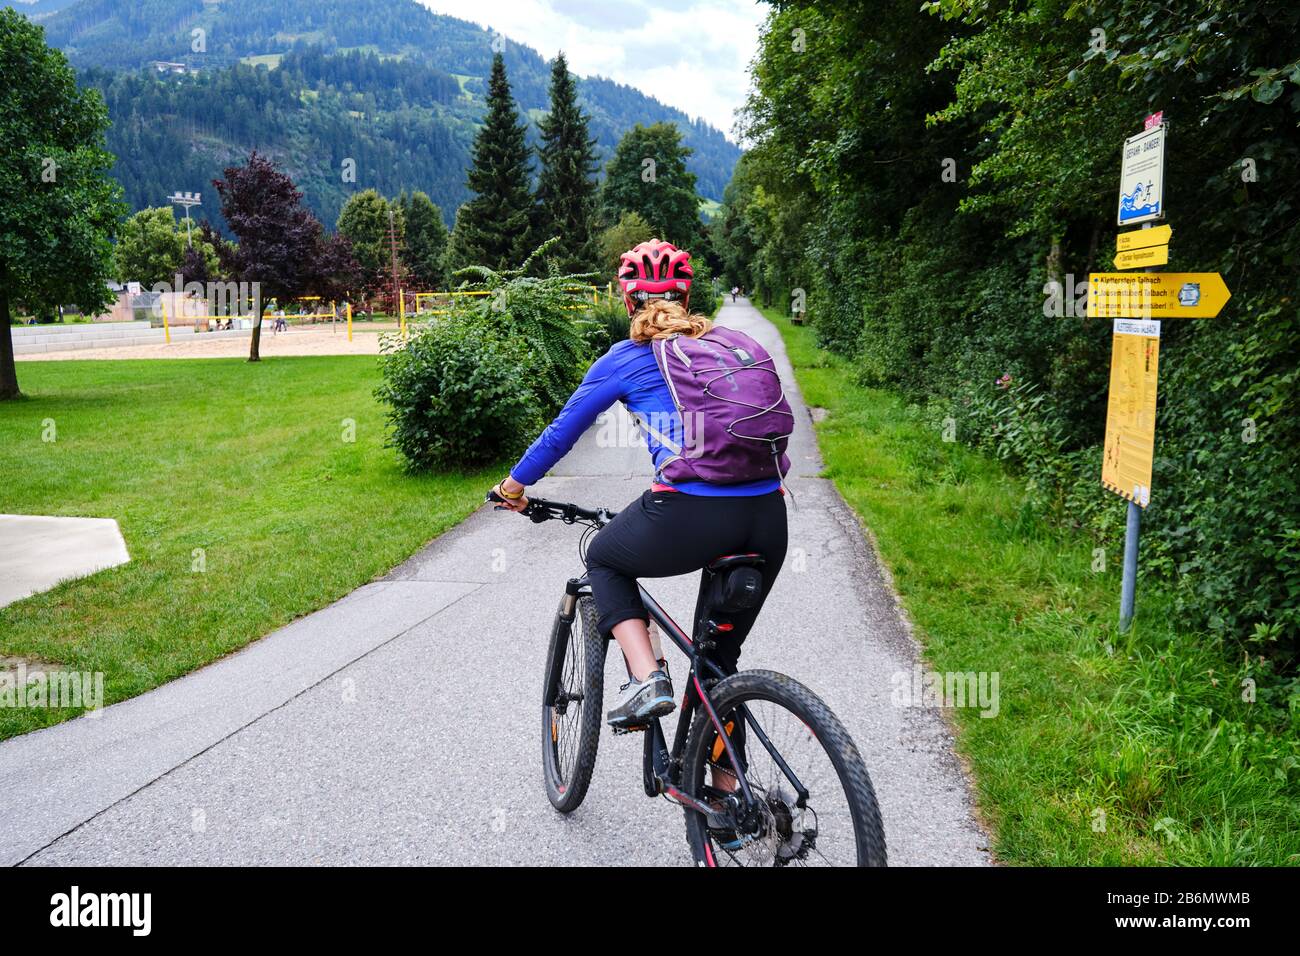 Zillertal, Austria - 20 de agosto de 2019: Mujer en una ruta en bicicleta en el valle de Zillertal, Austria. Foto de stock